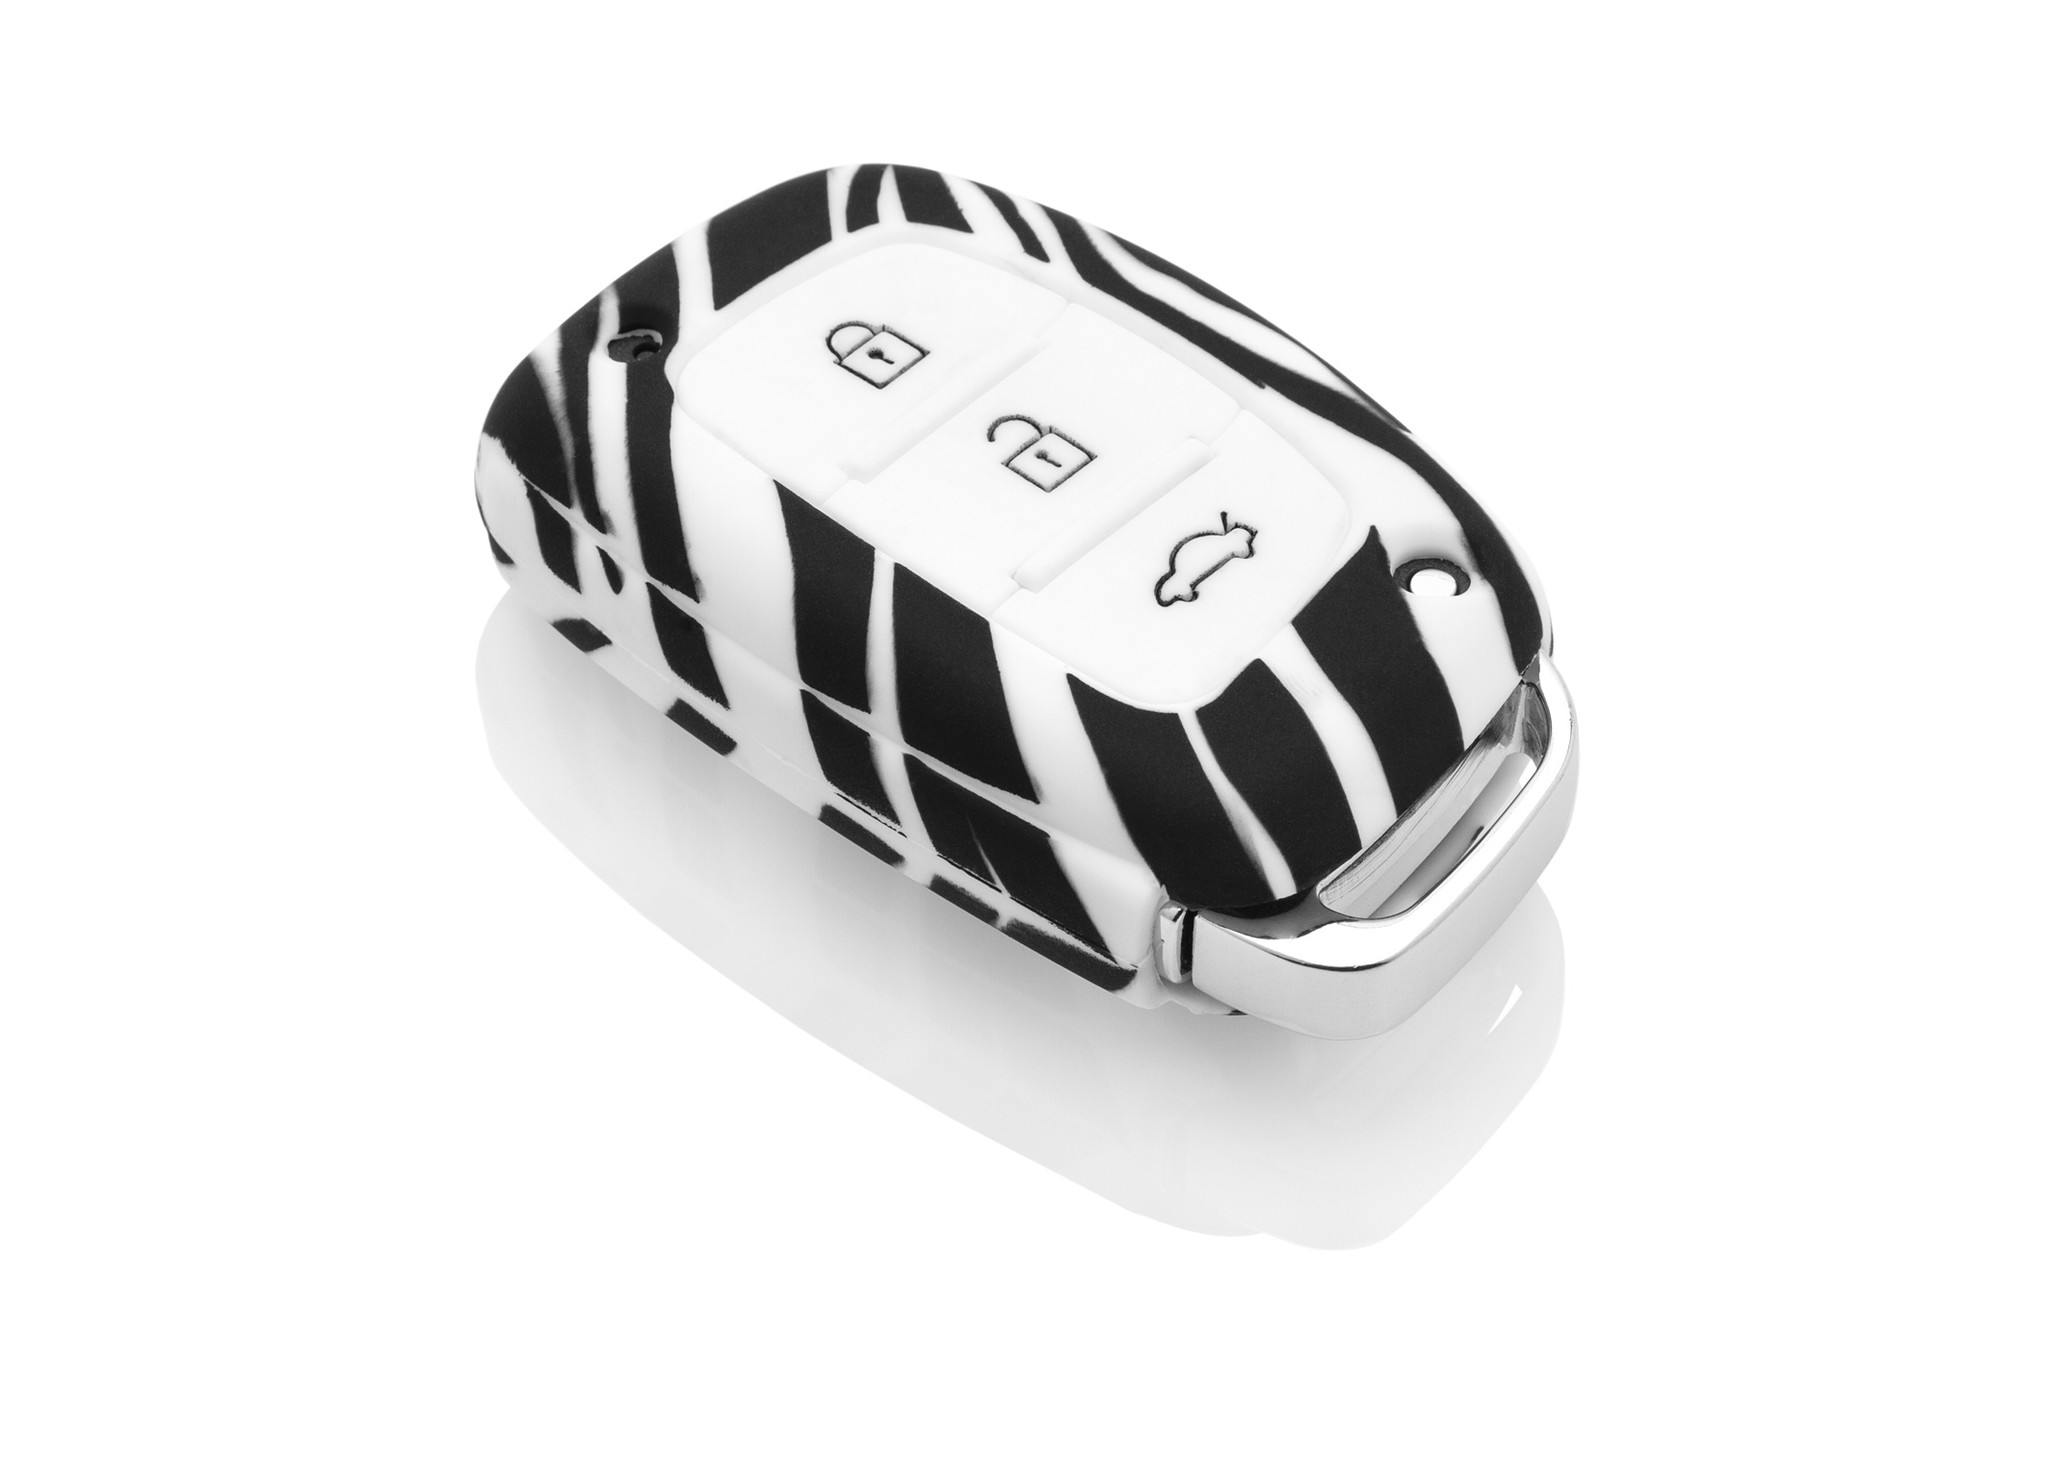 TBU car TBU car Autoschlüssel Hülle kompatibel mit Hyundai 3 Tasten (Keyless Entry) - Schutzhülle aus Silikon - Auto Schlüsselhülle Cover in Zebra